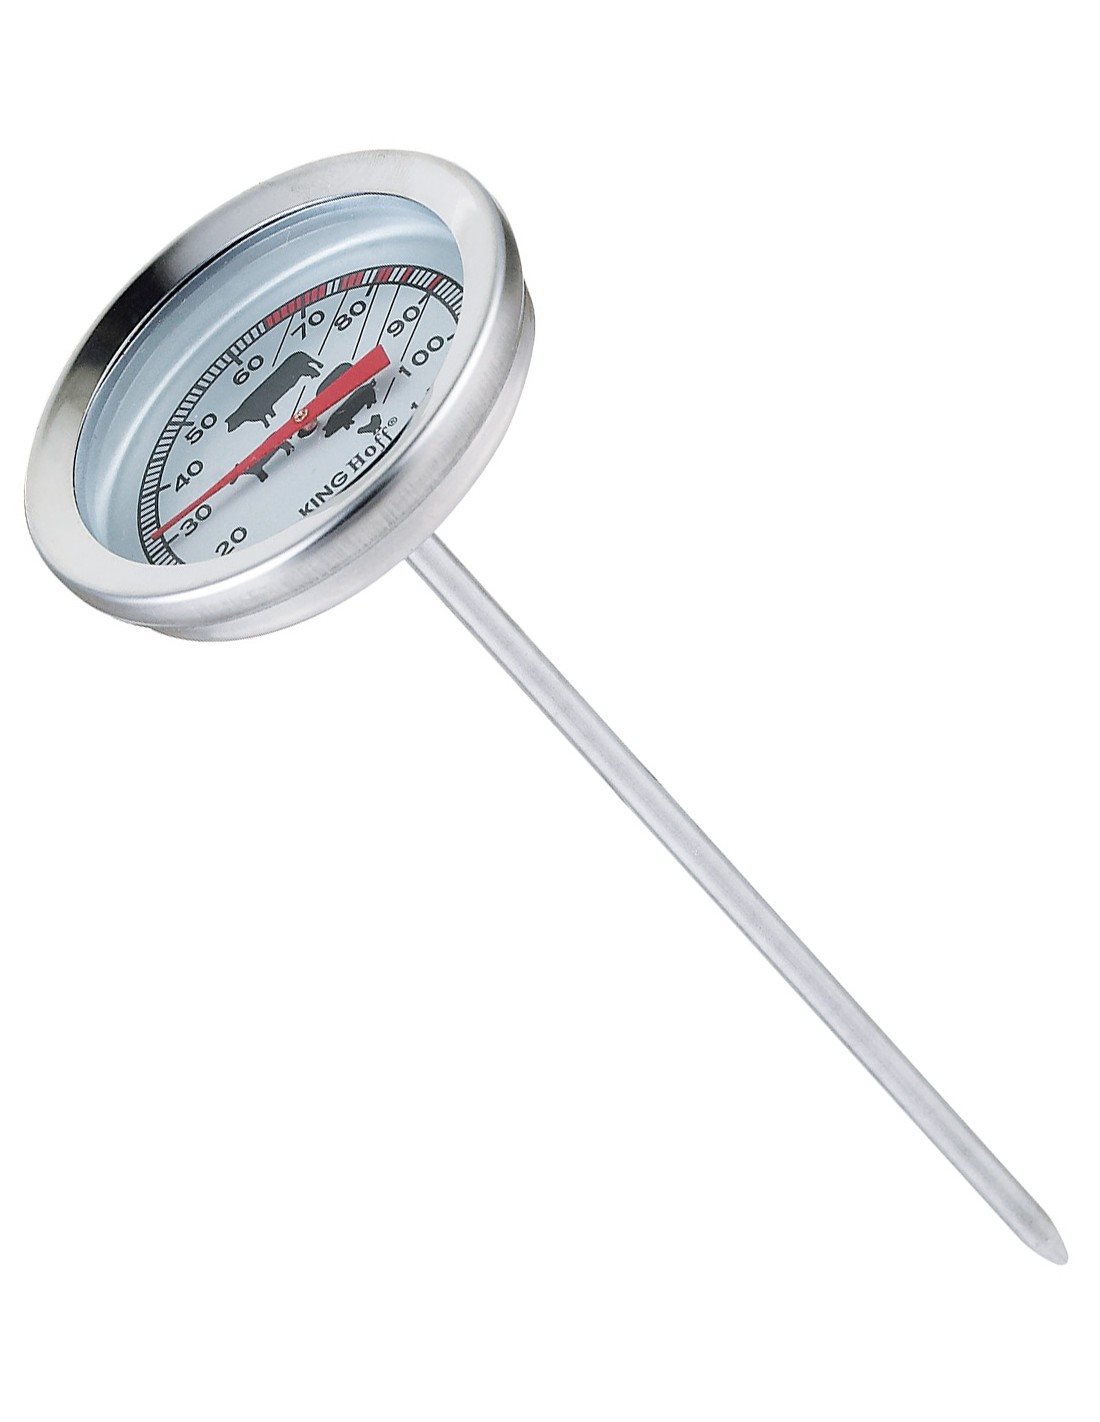 Αναλογικό Θερμόμετρο Μαγειρικής με Ακίδα